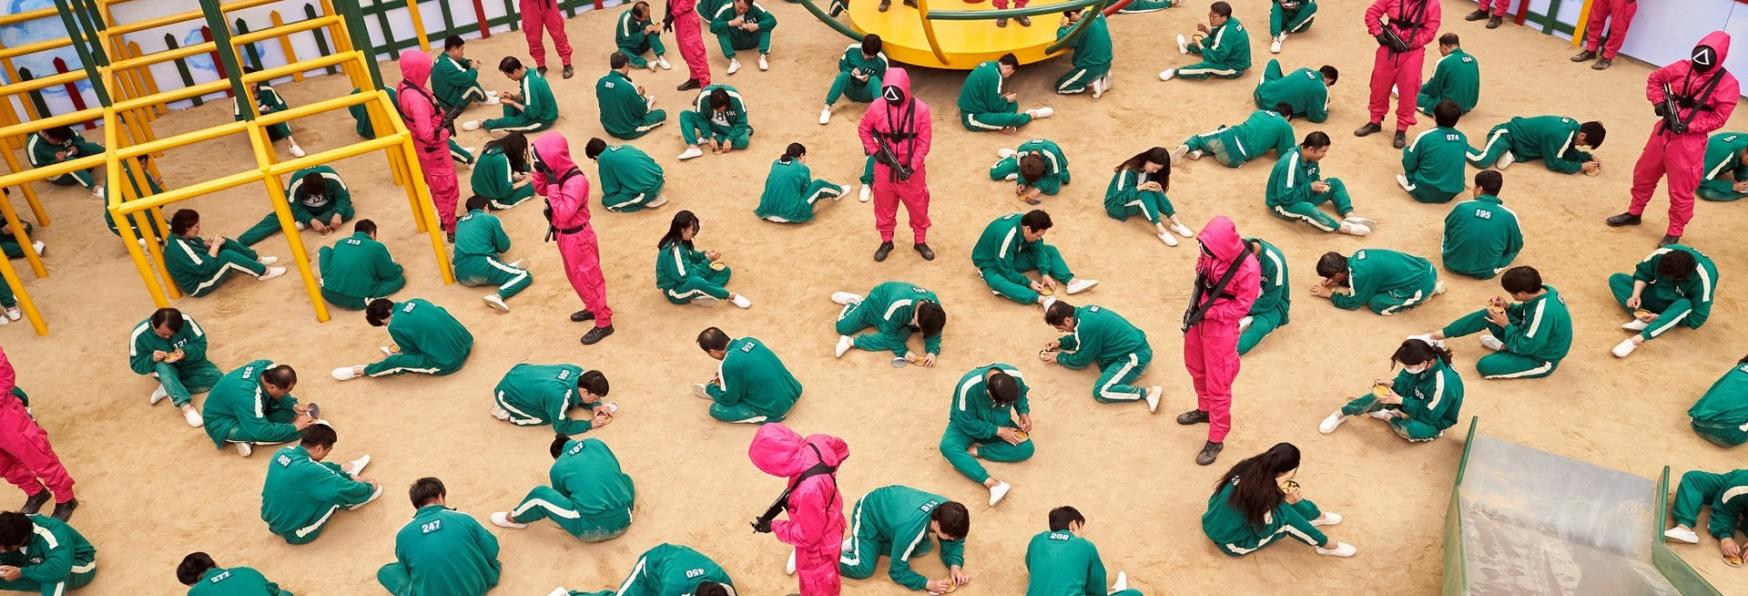 Squid Game: The Challenge - in arrivo su Netflix il Reality Show basato sulla Serie TV Coreana